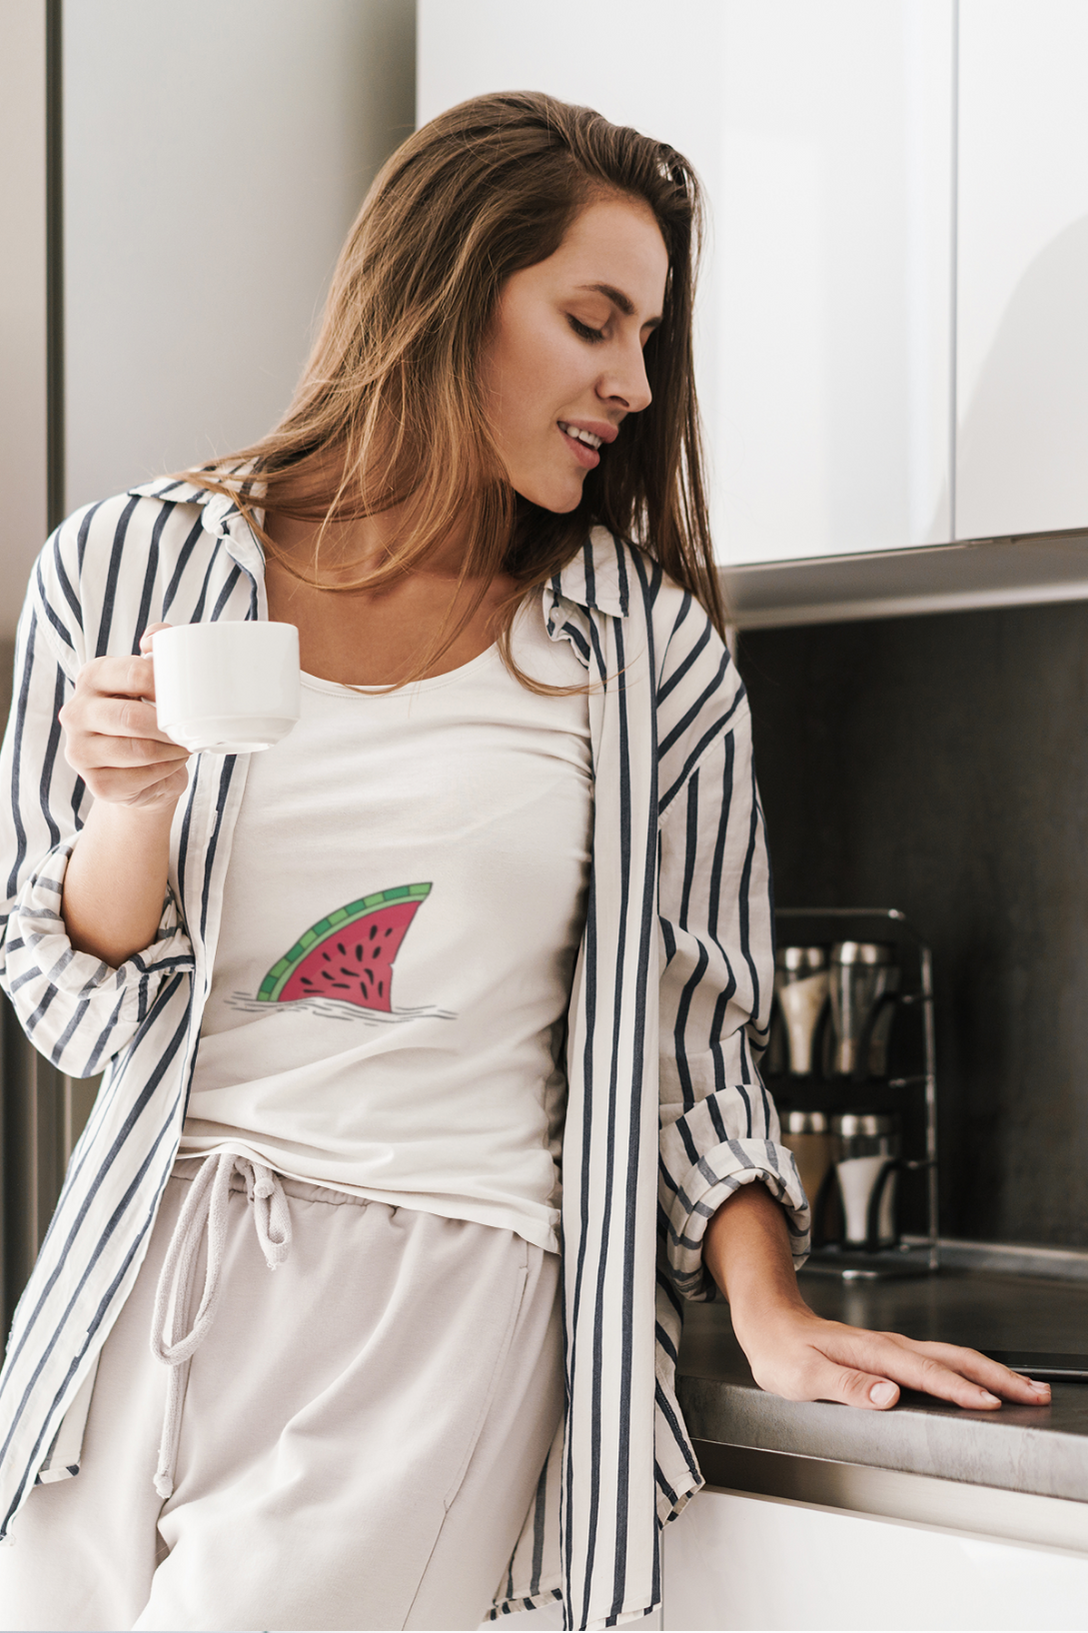 Watermelon Shark Fin Printed Scoop Neck T-Shirt For Women - WowWaves